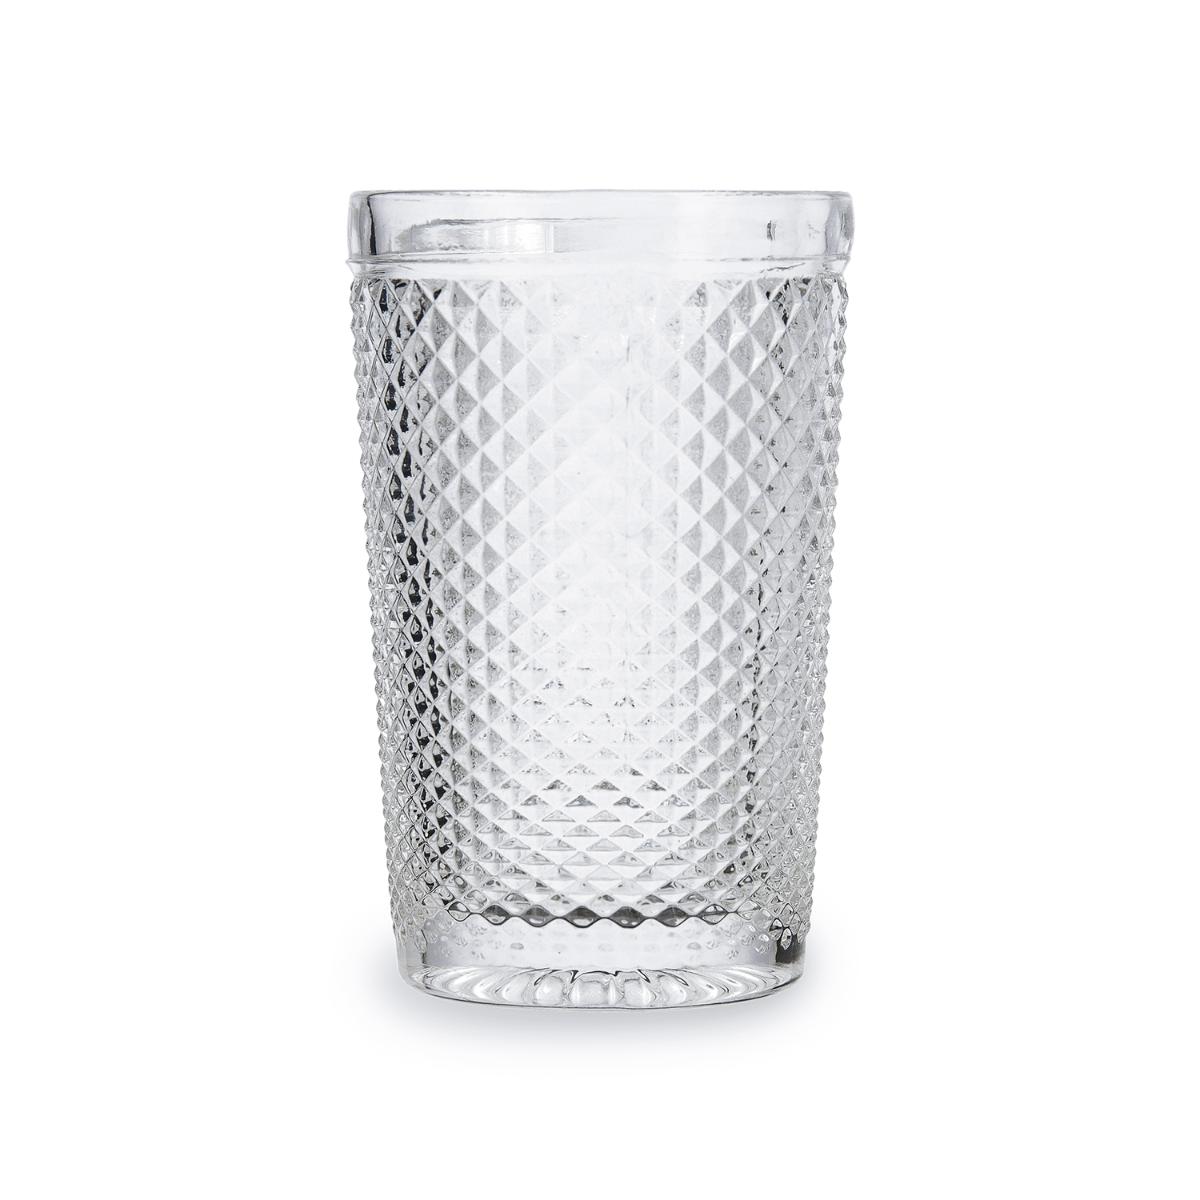 Bidasoa - BIDASOA ONIX Set 3 Vasos Altos Vidrio 35CL Transparente Brillo Facil de limpiar Reciclable , Ecológico , Material 100% saludable , 100% higiénico , Libre de cadmio y plomo , No poroso , Larga duración Apto Frigorífico 3 vasos altos transparente y relieve